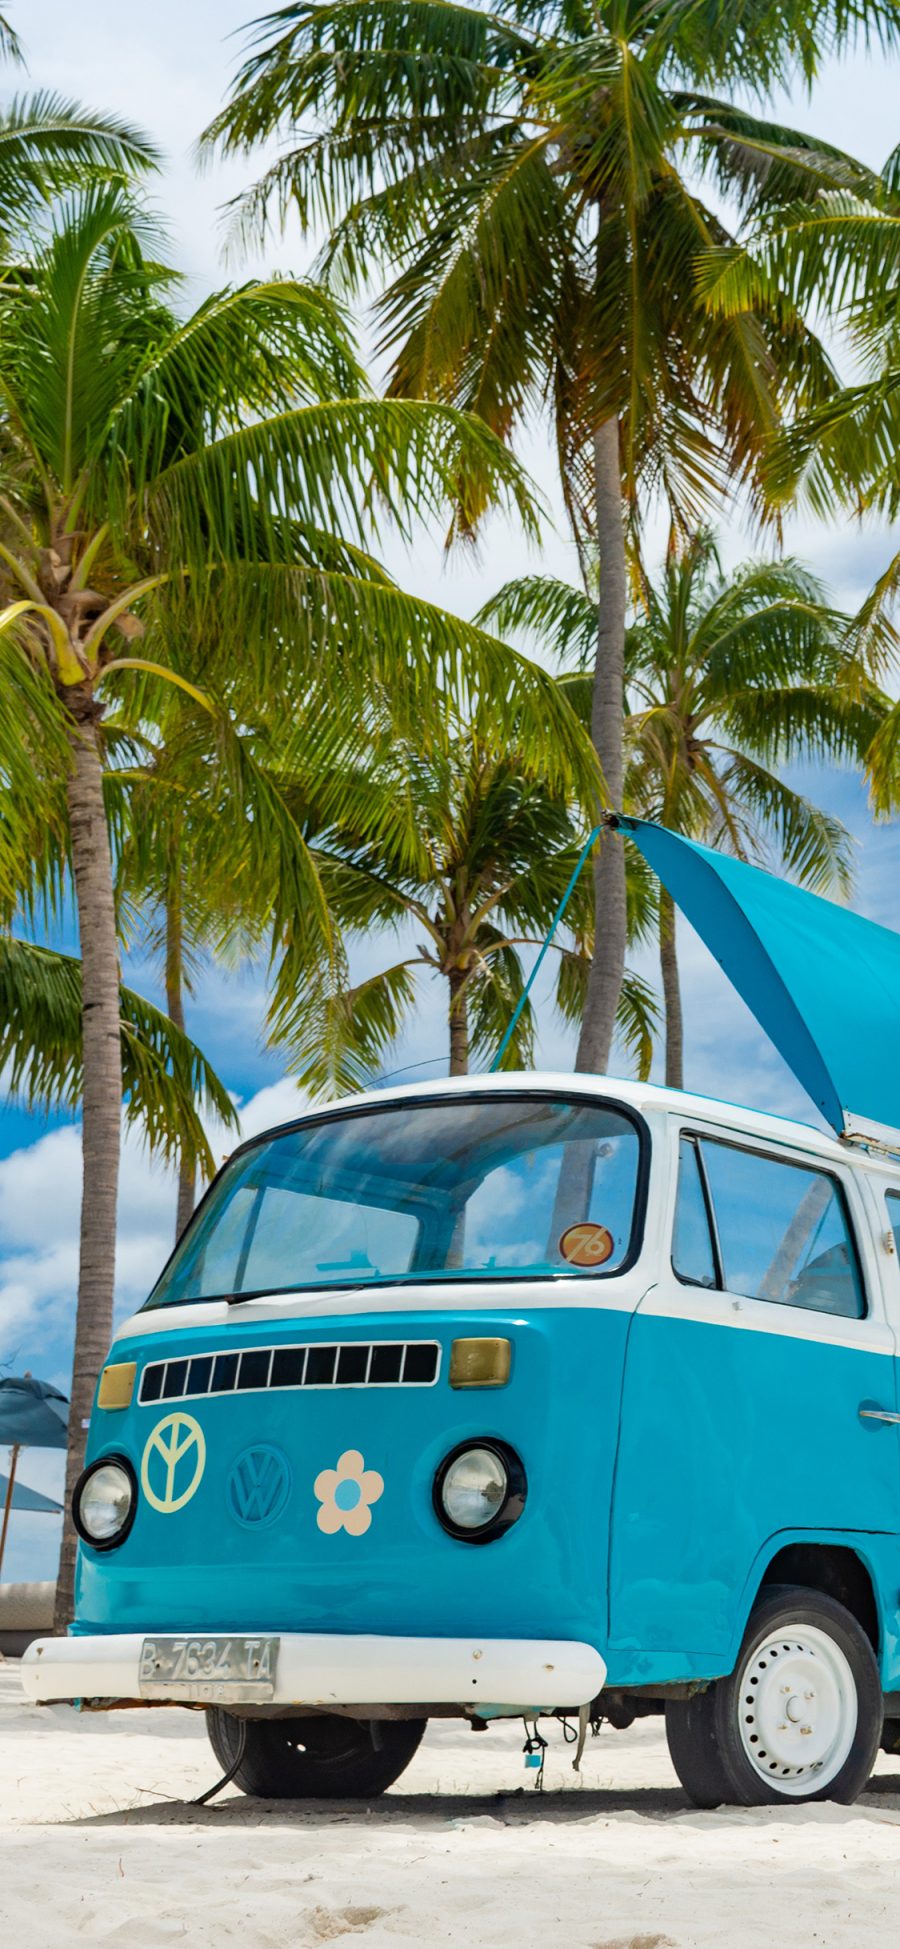 [2436×1125]海滩 椰树 小巴士 蓝天白云 美景 苹果手机壁纸图片